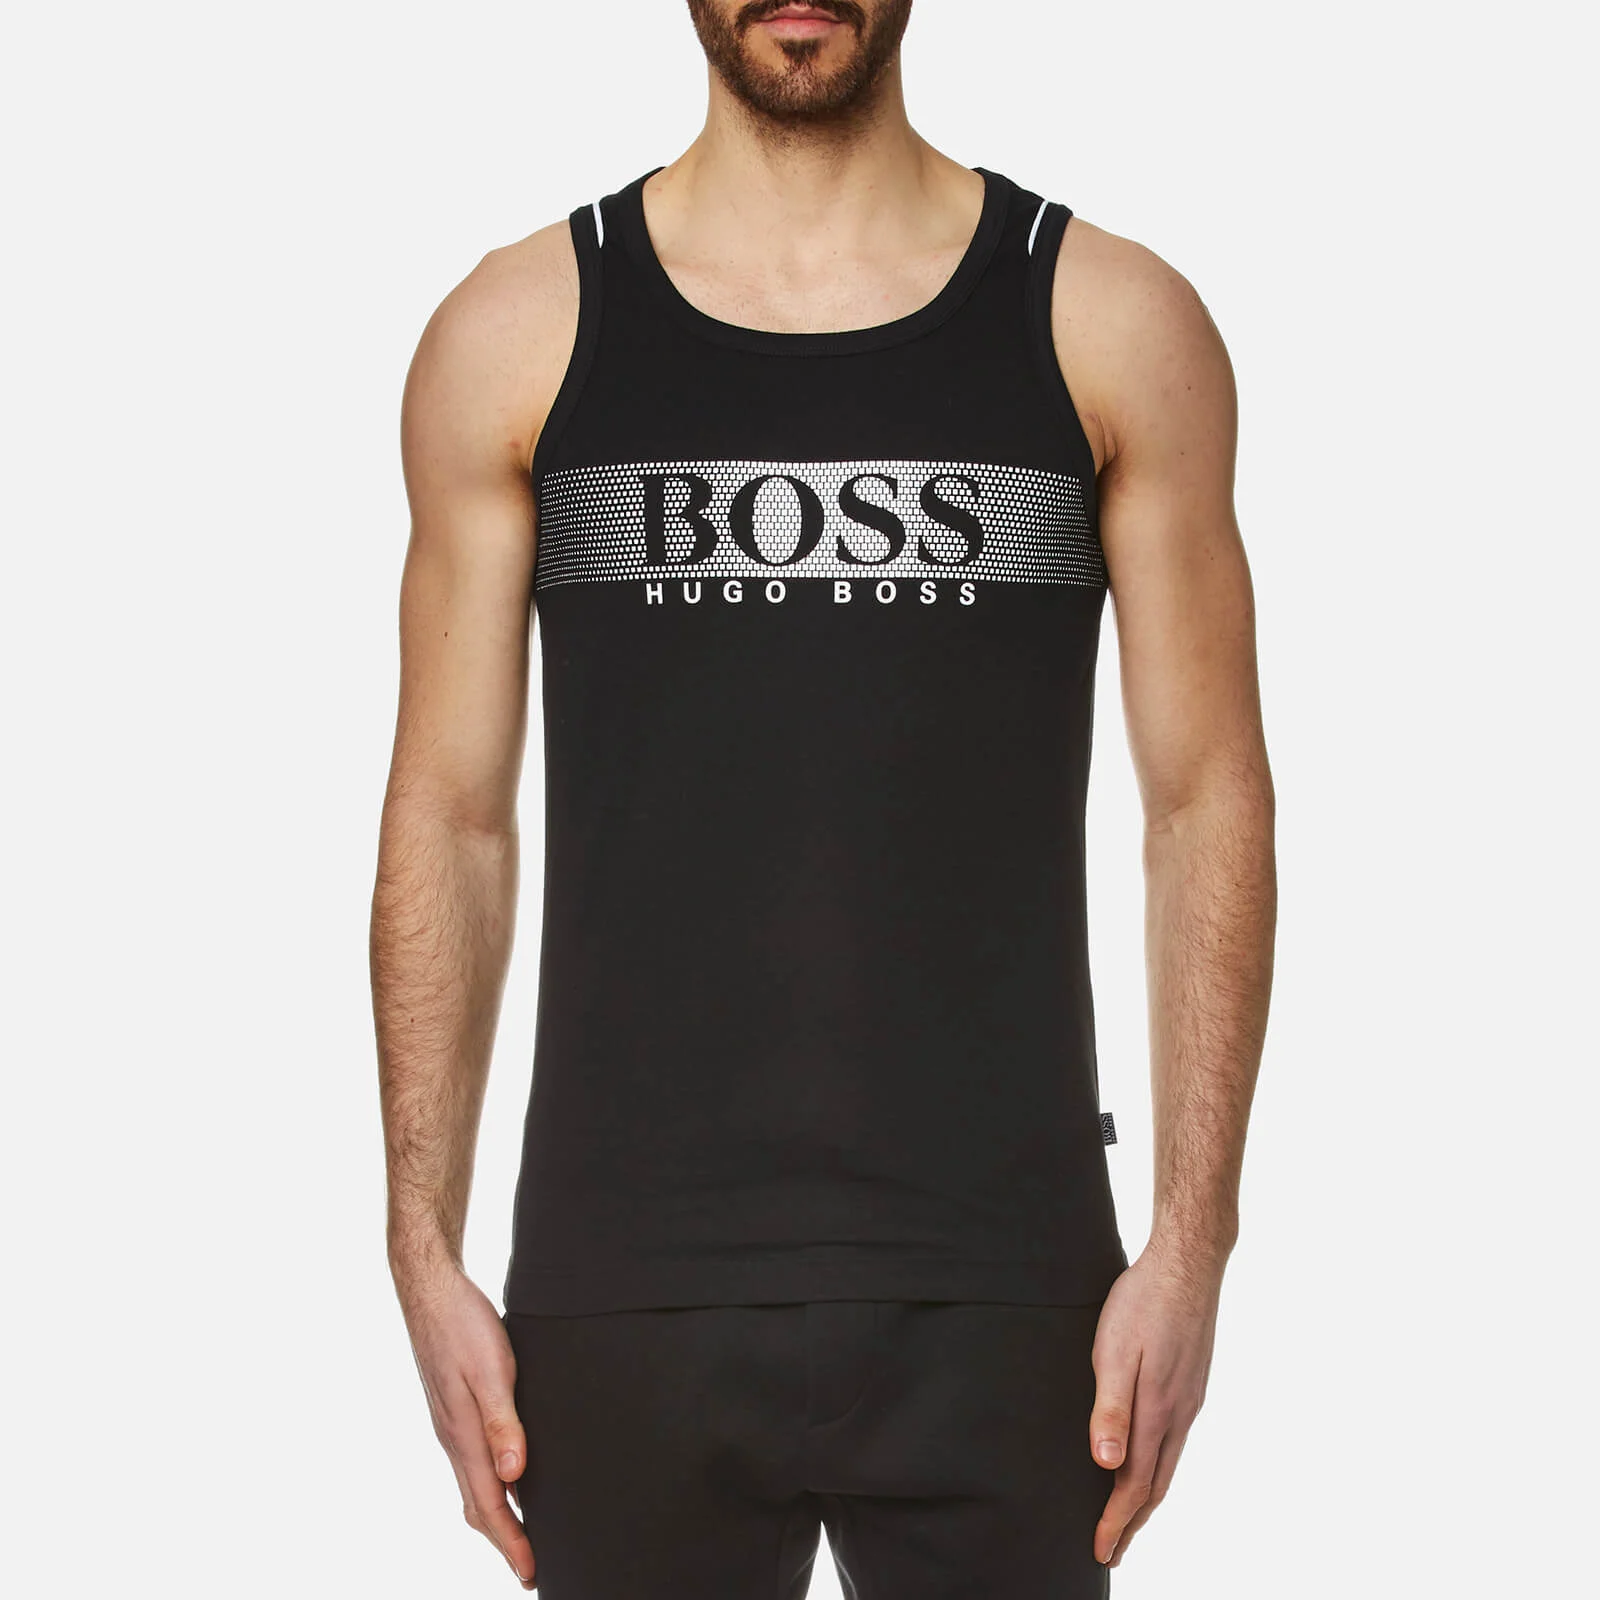 BOSS Hugo Boss Men's Large Logo Vest - Black Image 1